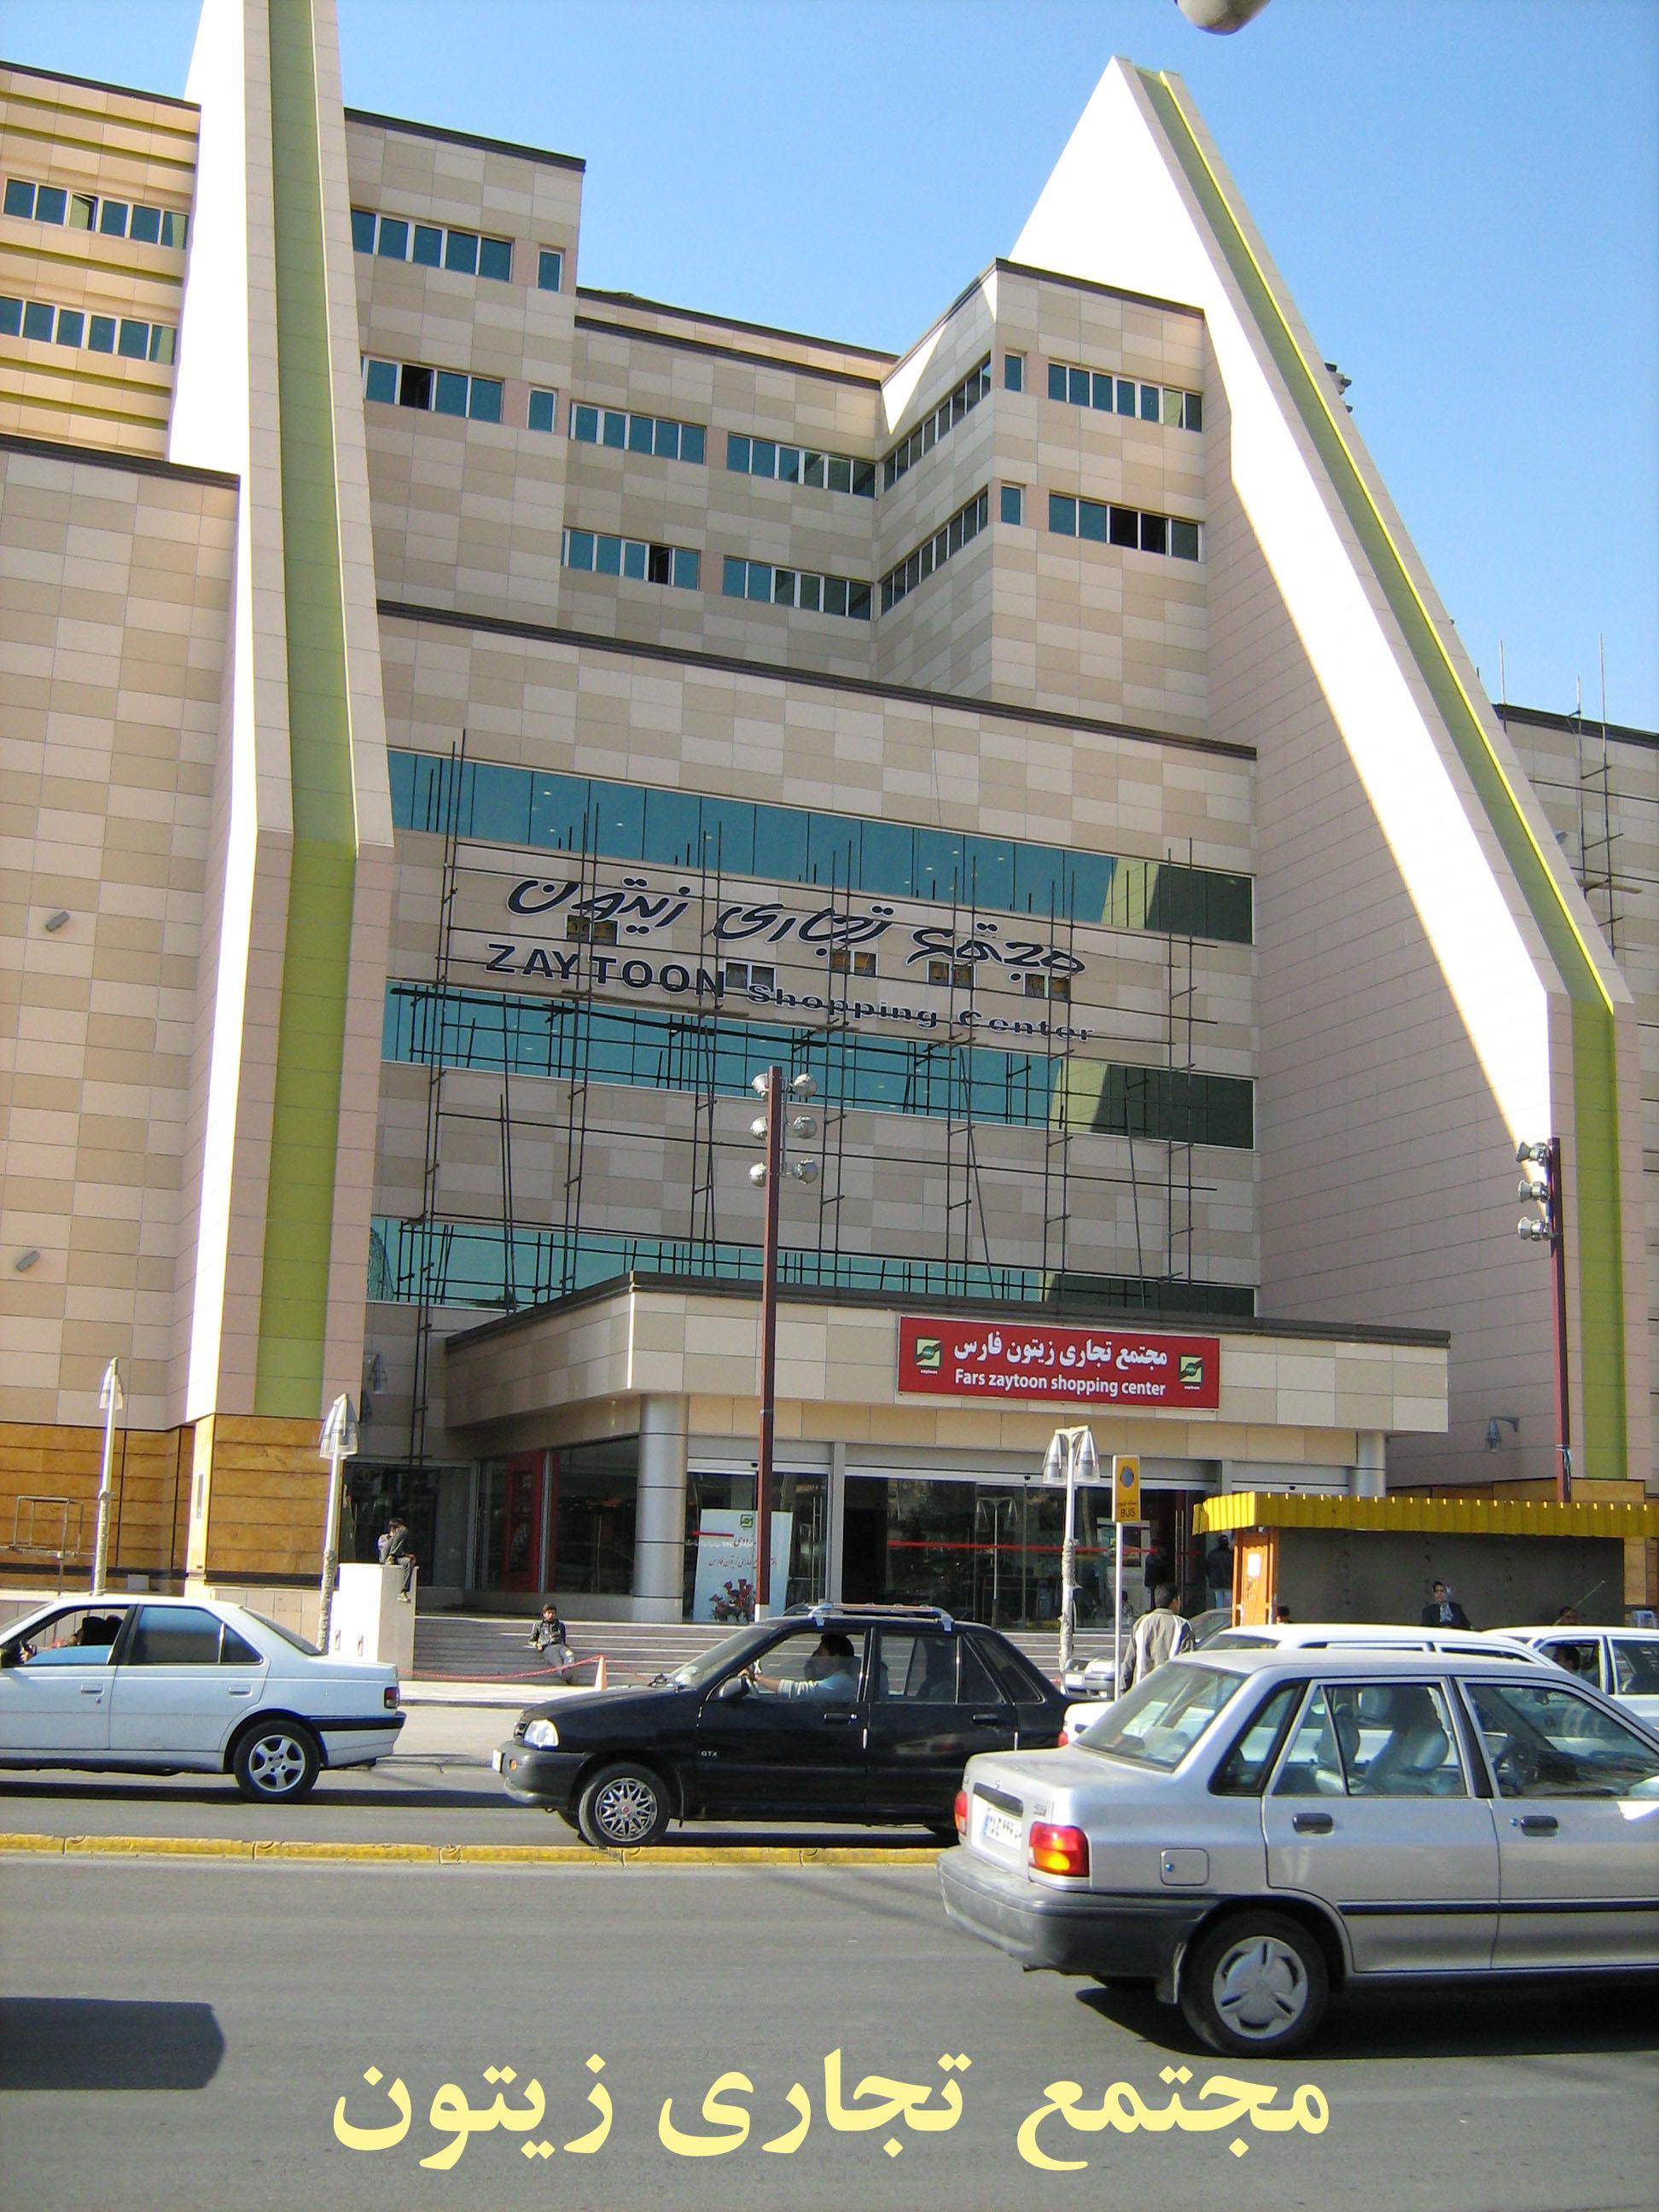 Cover image of this place Zeytoun Shopping Center | مجتمع تجاری زیتون